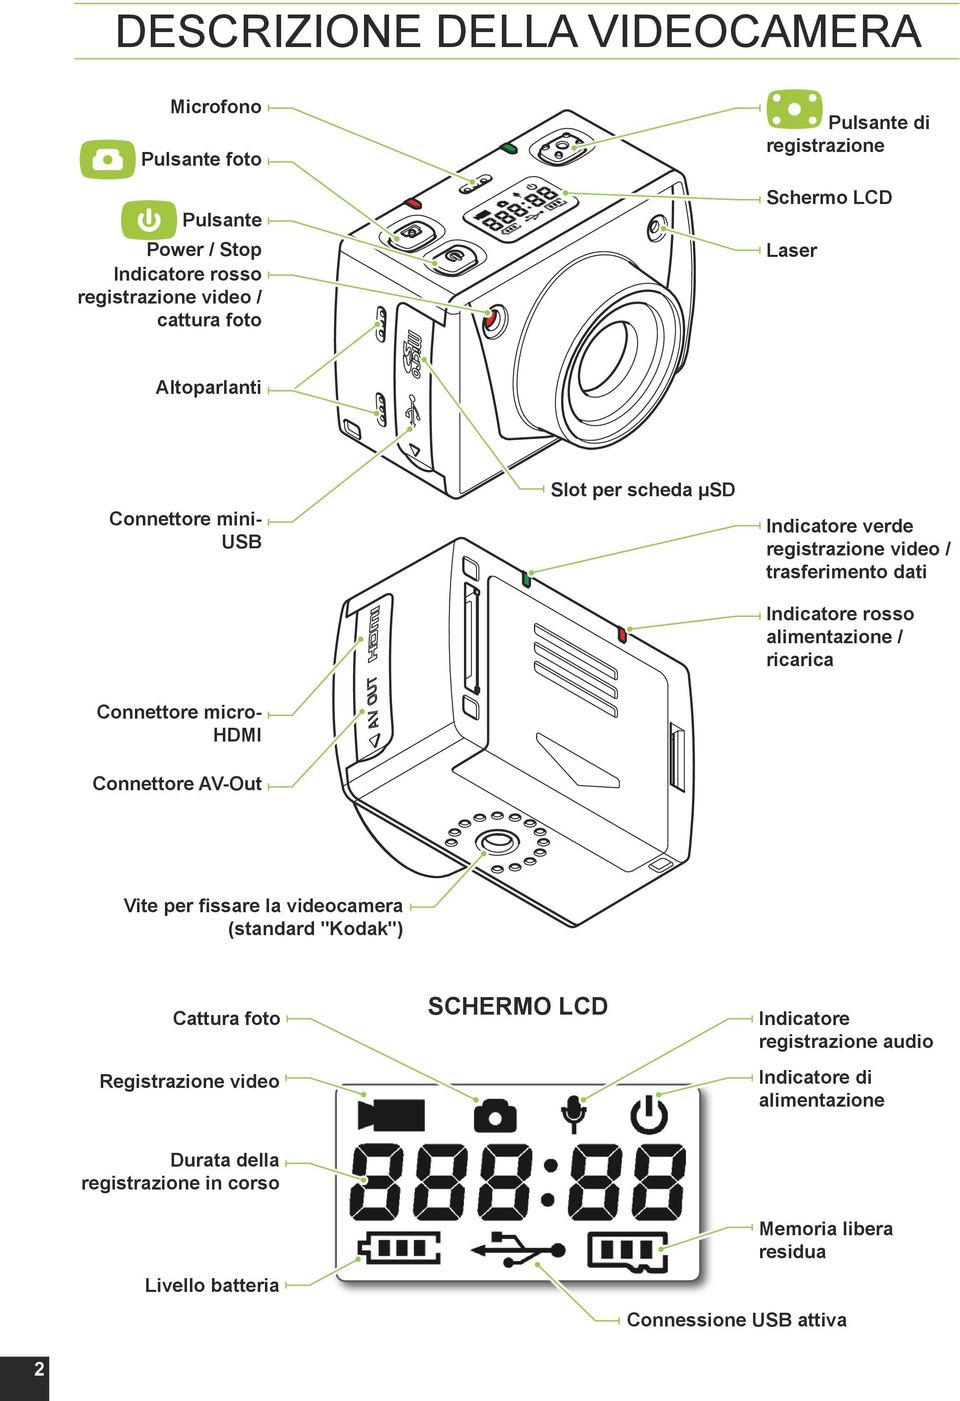 alimentazione / ricarica Connettore micro- HDMI Connettore AV-Out Vite per fissare la videocamera (standard "Kodak") Cattura foto Registrazione video